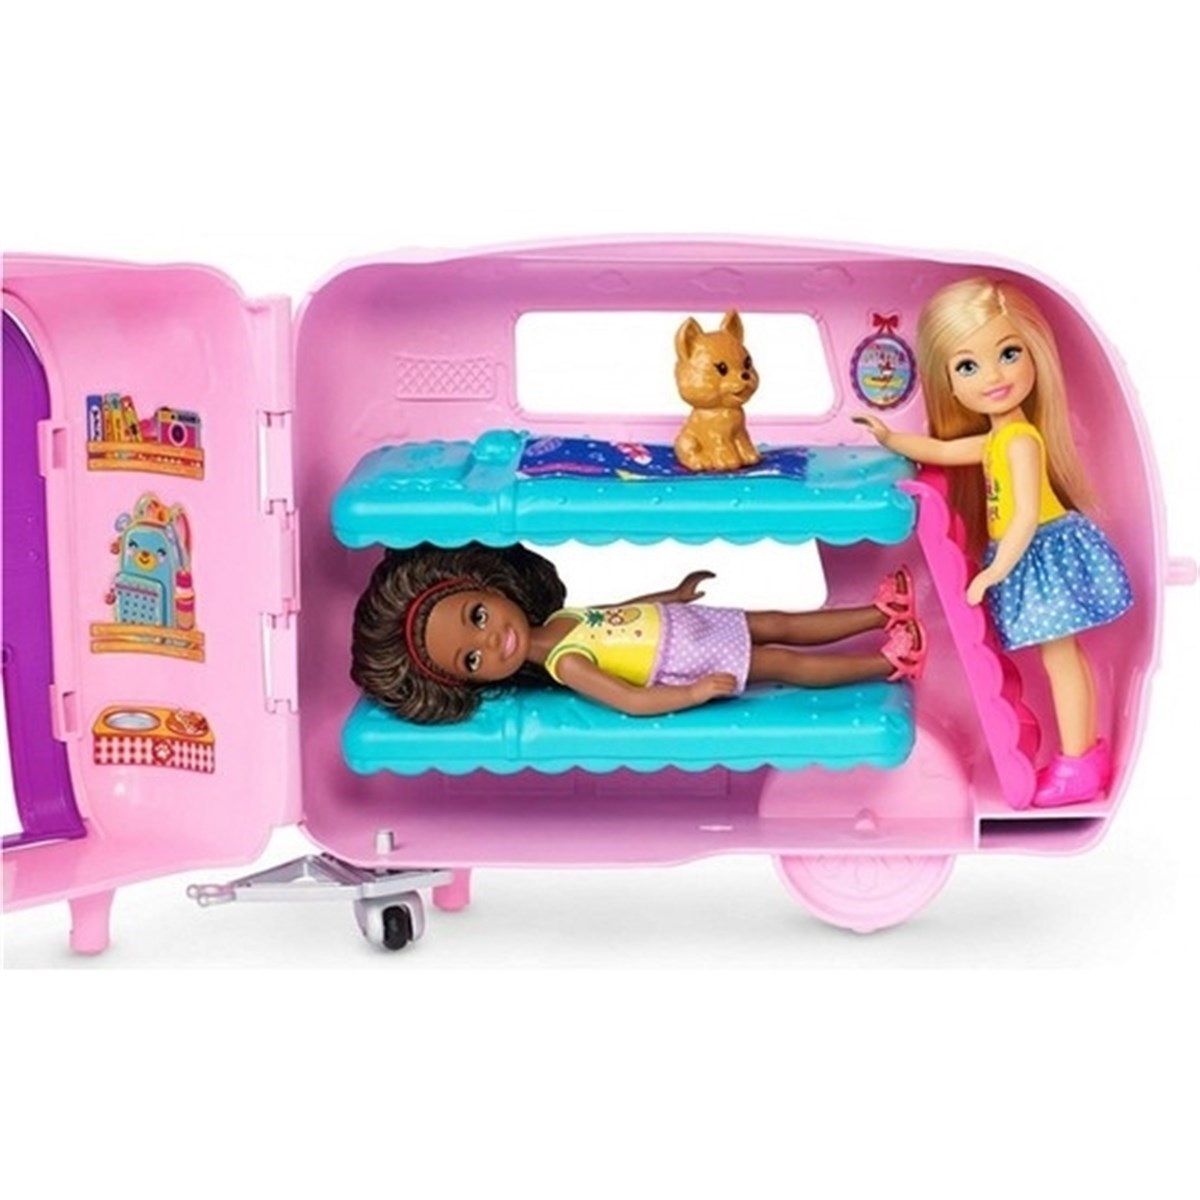 Barbie Chelseanin Karavanı FXG90 Fiyatı ve Özellikleri